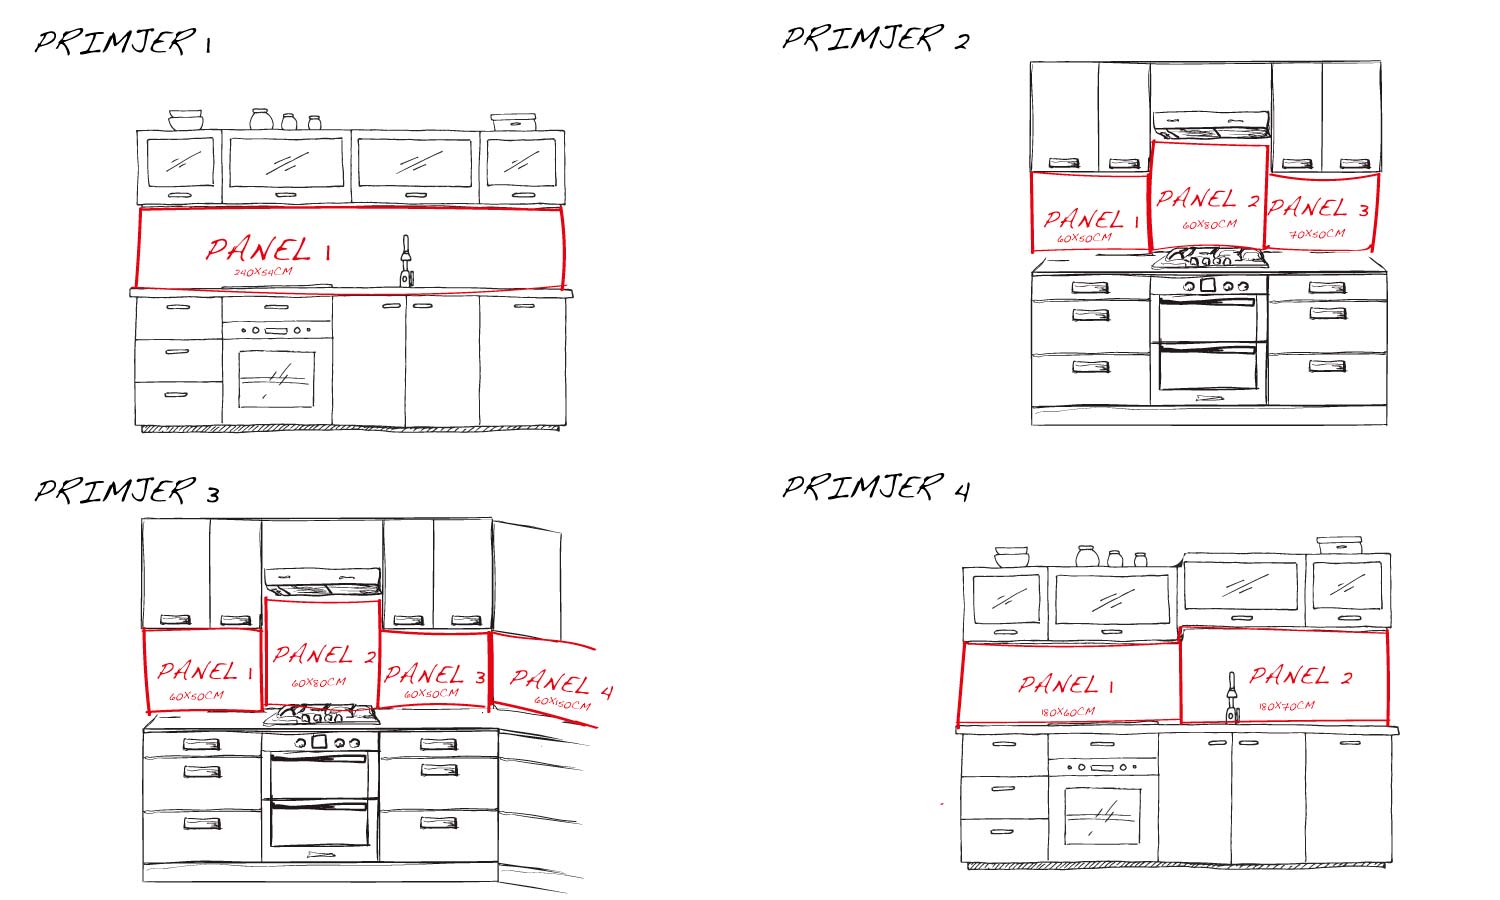 Kuhinjski paneli Seamless polka dots - Pleksi steklo - s tiskom za kuhinjo, Stenske obloge PKU0356